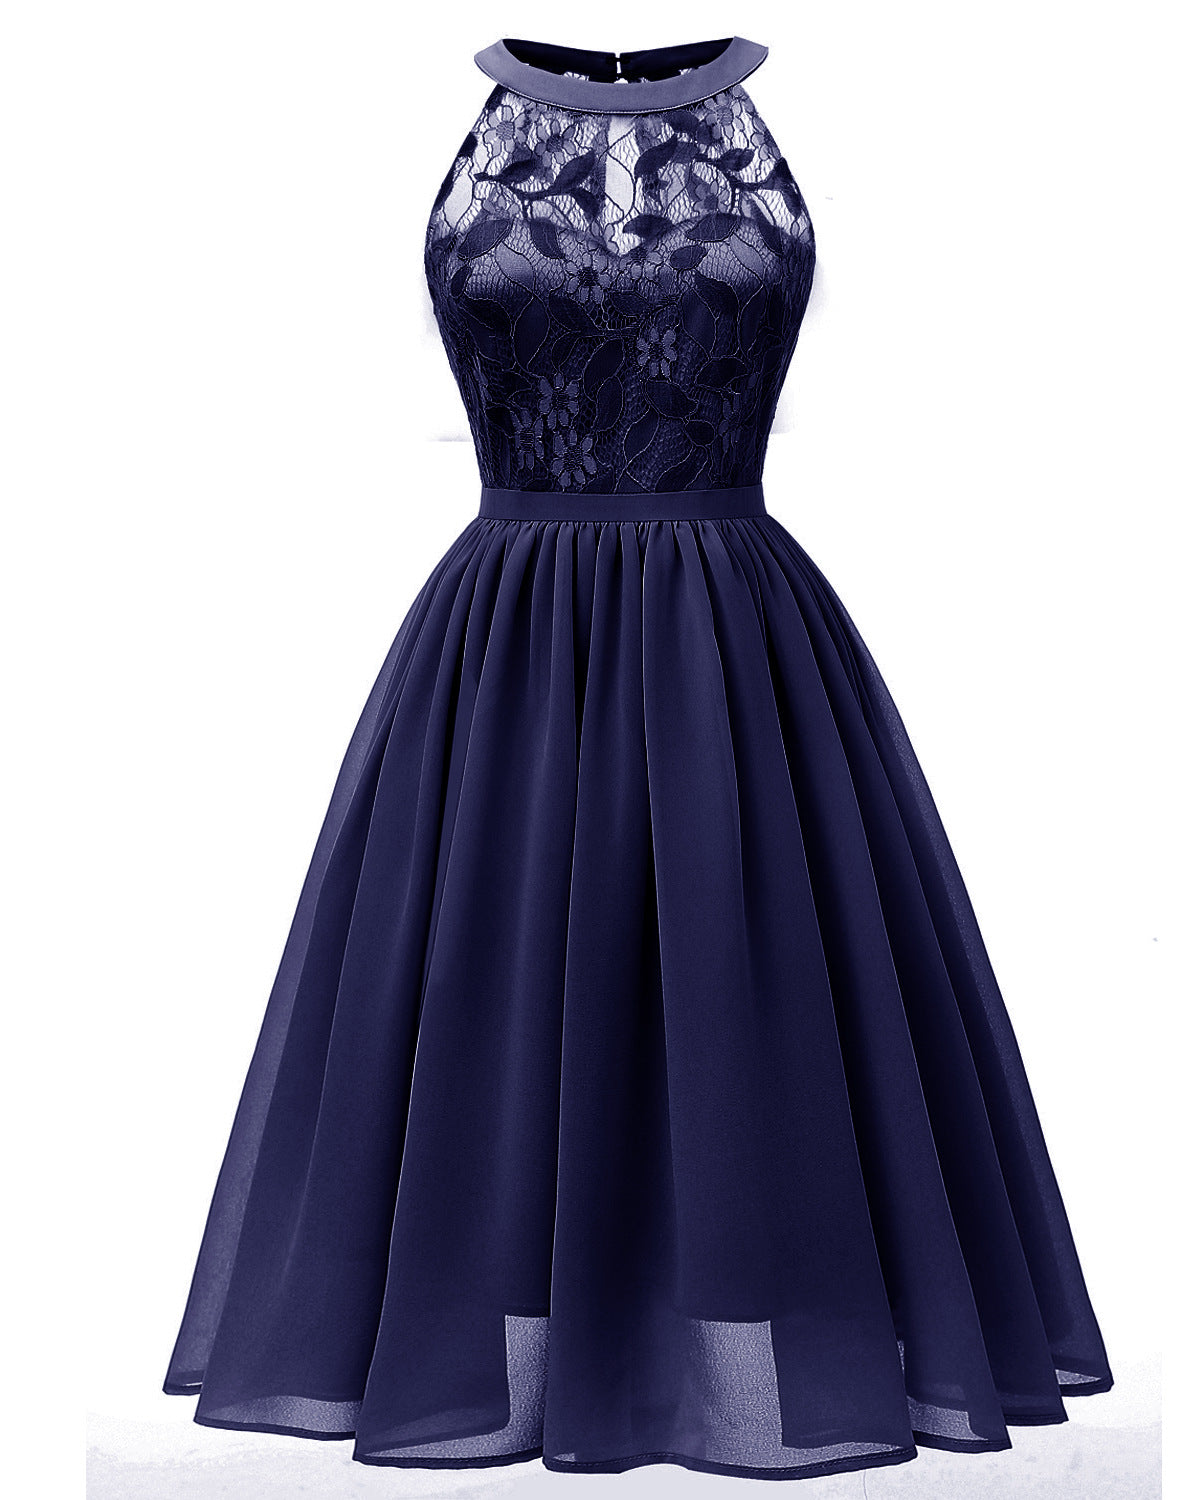 Sleeveless Lace Dress